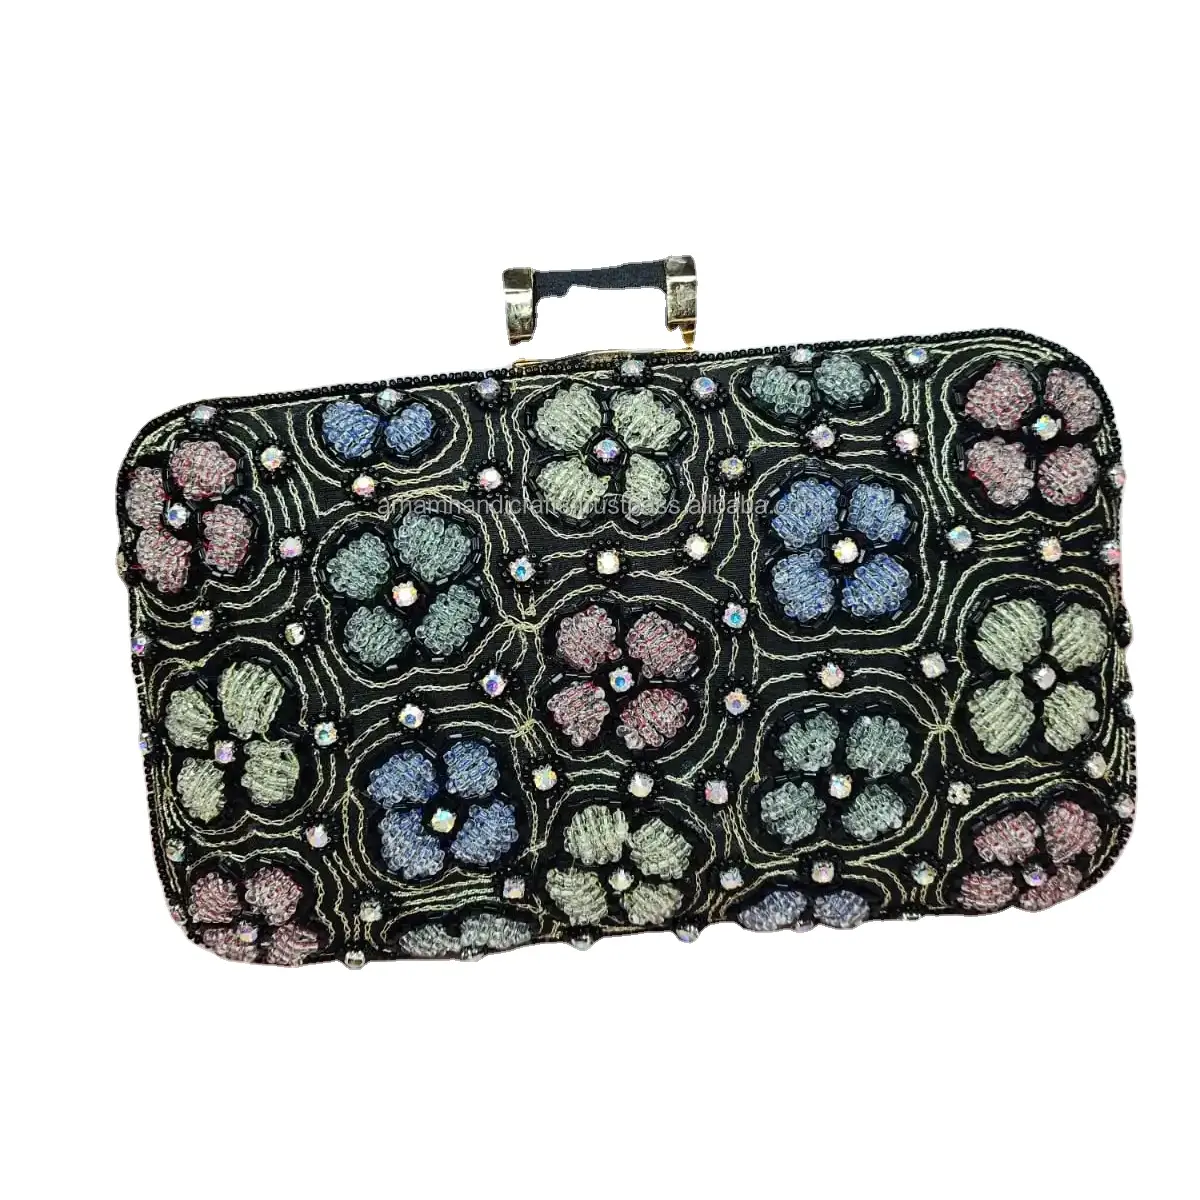 Yeni hint tasarım Banjara el yapımı nakış el çantası toptan Lot bayan çanta hint tedarikçisi tarafından lüks el sanatları